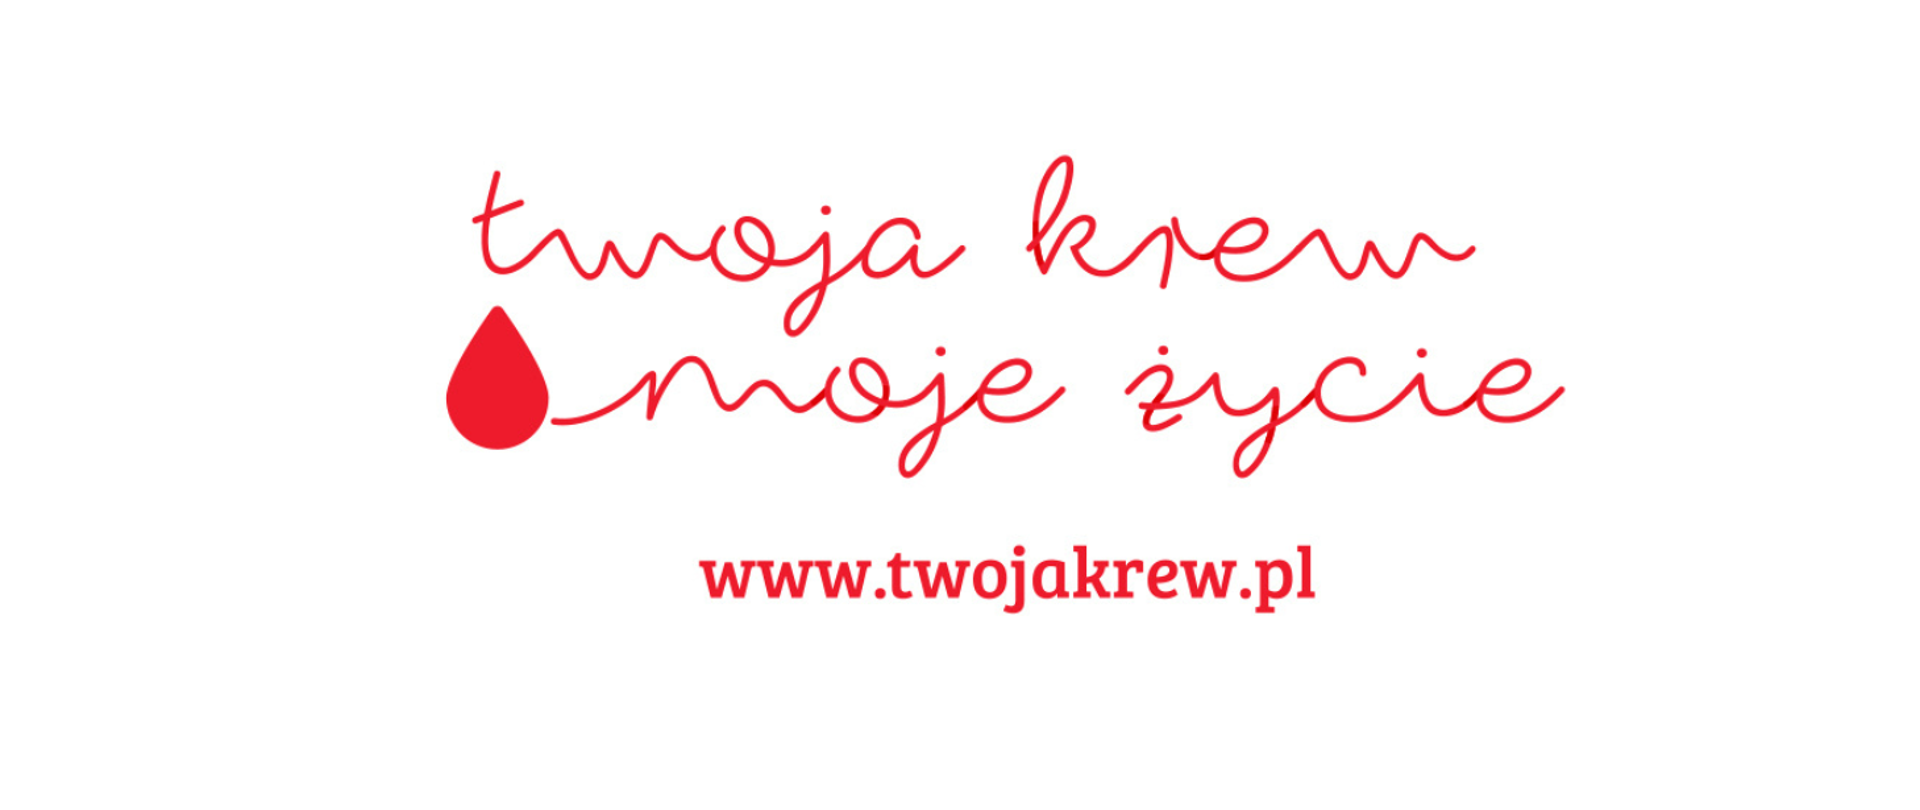 Na białym tle znajduje się napis w kolorze czerwonym "Twoja krew moje życie". Poniżej znajduje się adres strony internetowej w kolorze czerwonym - www.twojakrew.pl